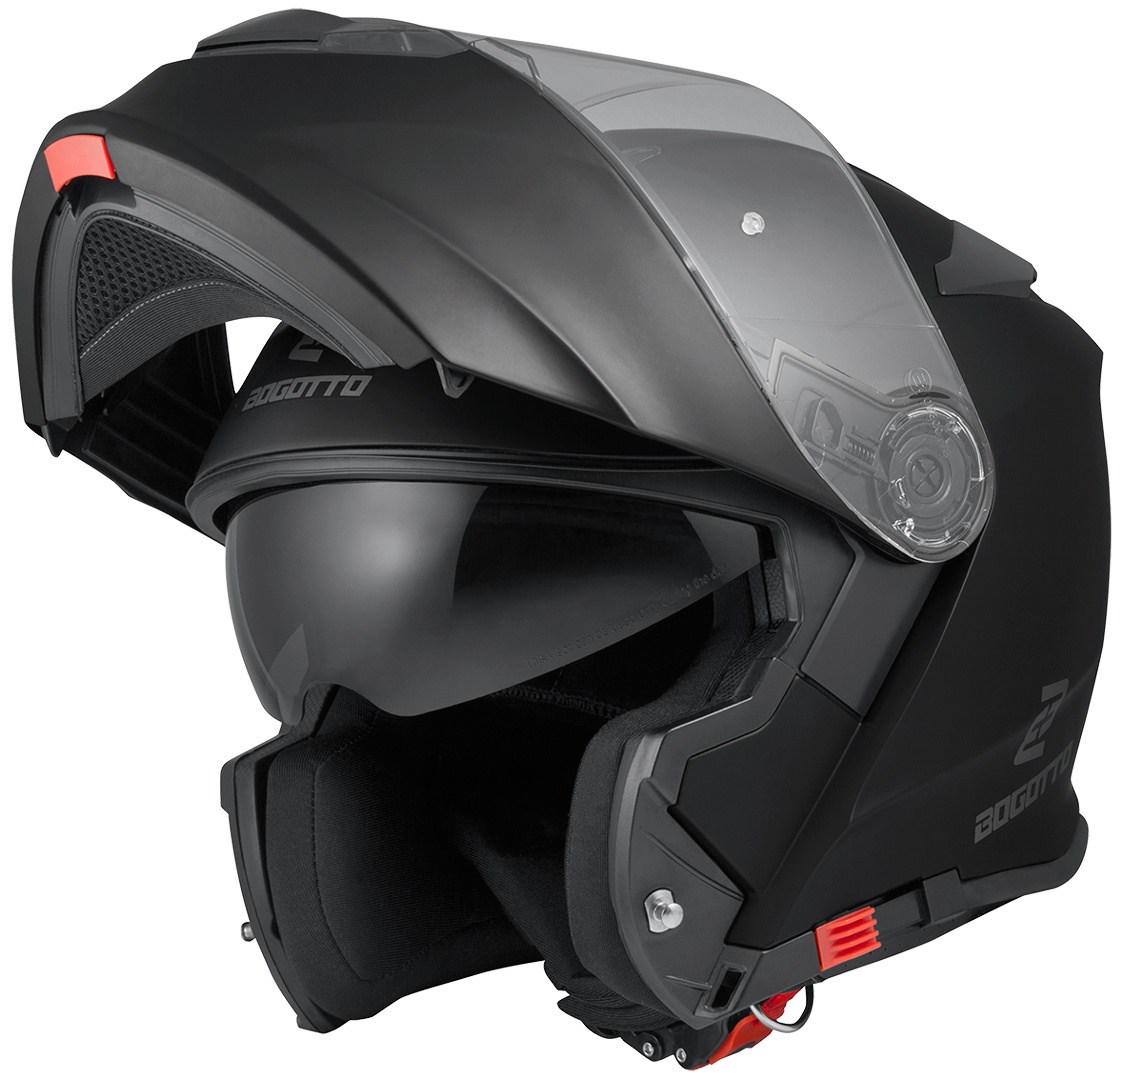 Мотоциклетный шлем Bogotto V271 с логотипом, черный мотоциклетный шлем alien ii bandit черный мэтт